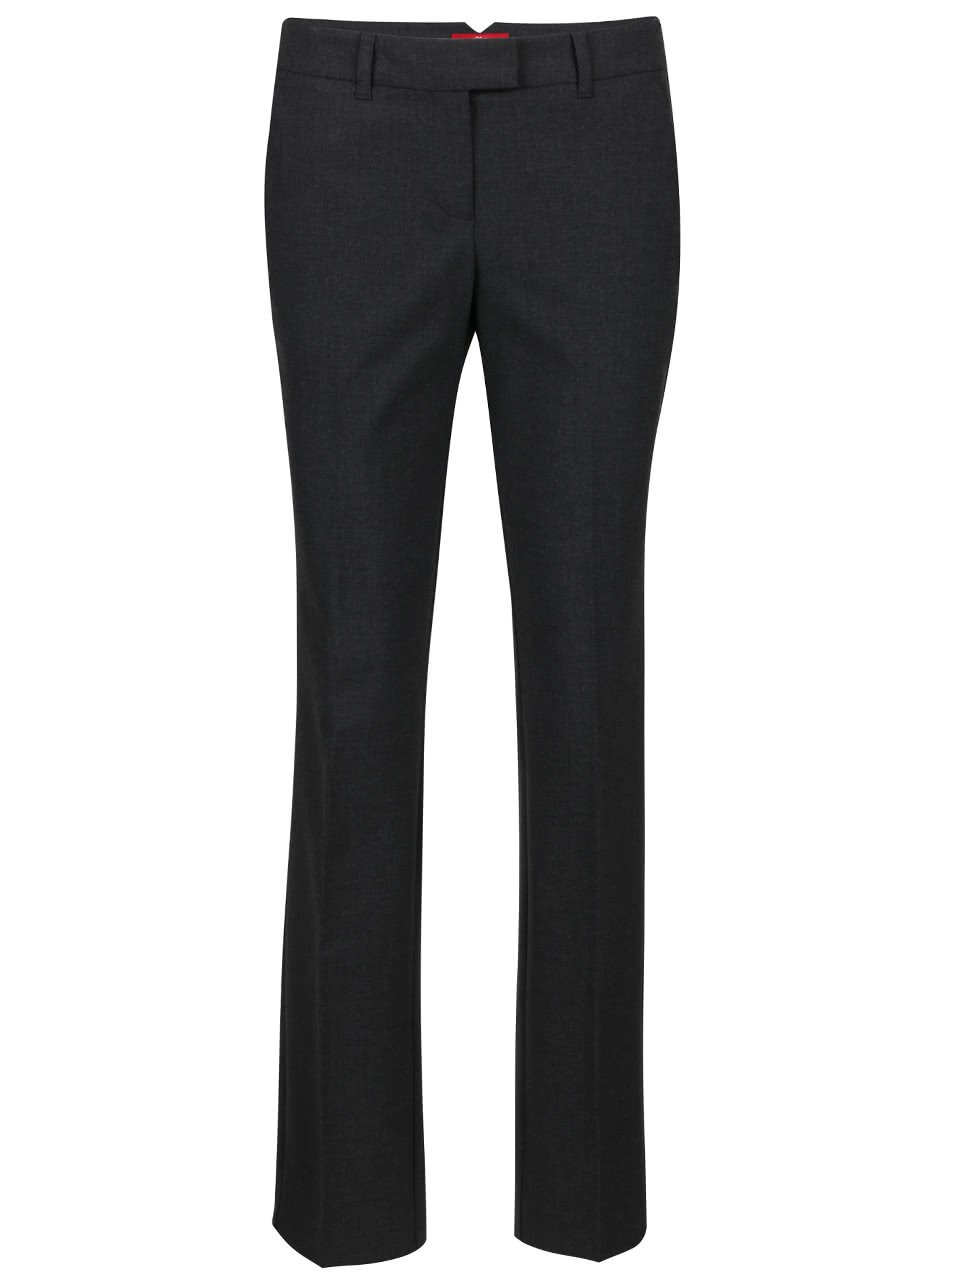 Tmavě šedé dámské strečové kalhoty s.Oliver